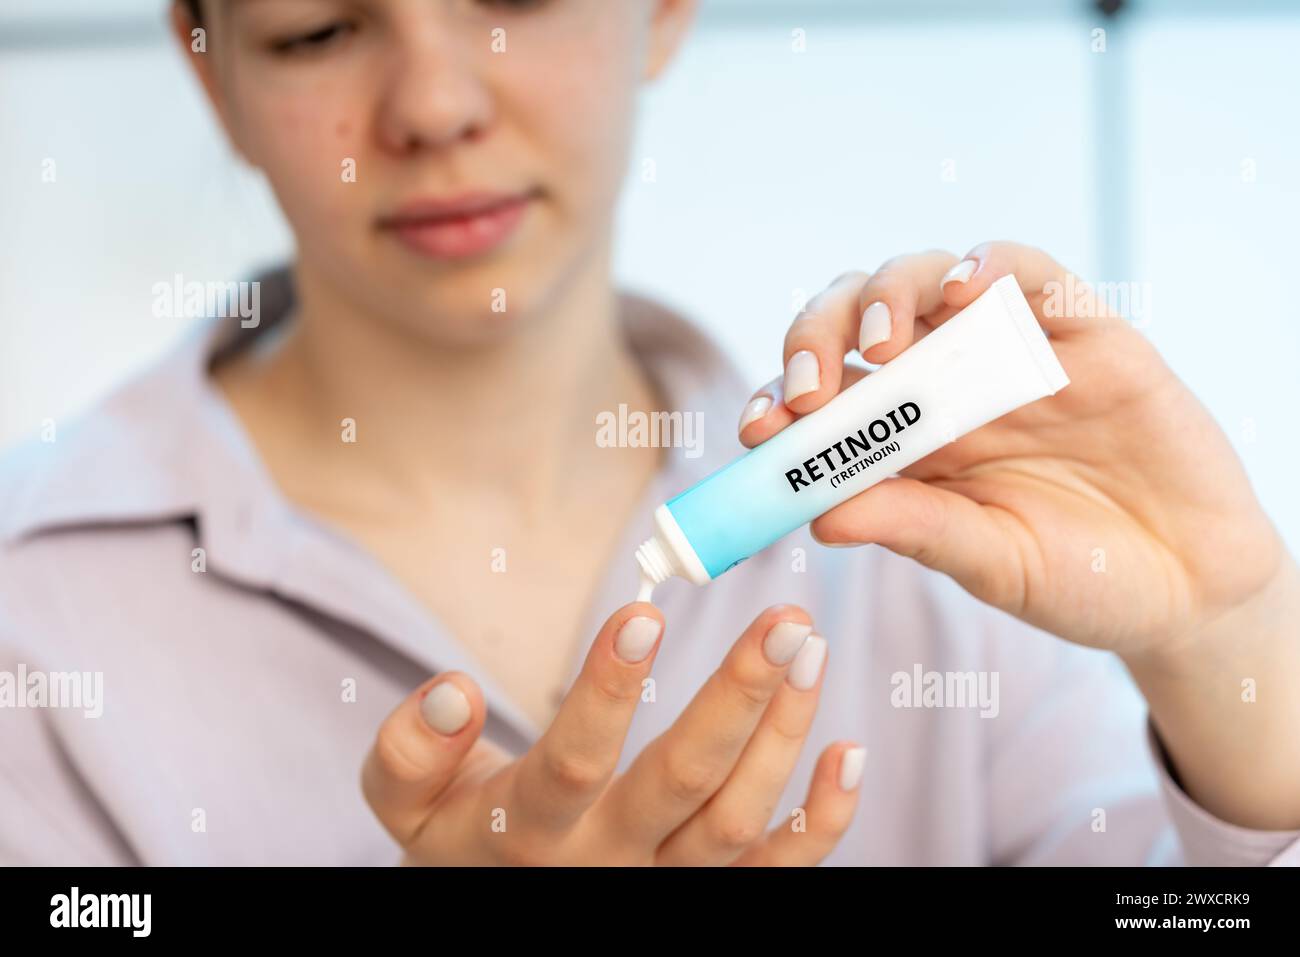 Retinoid-medizinische Creme, konzeptuelles Bild. Eine Creme aus Vitamin A, die topisch zur Behandlung von Akne, zur Reduzierung von Falten und zur Verbesserung der Hautstruktur verwendet wird. Stockfoto